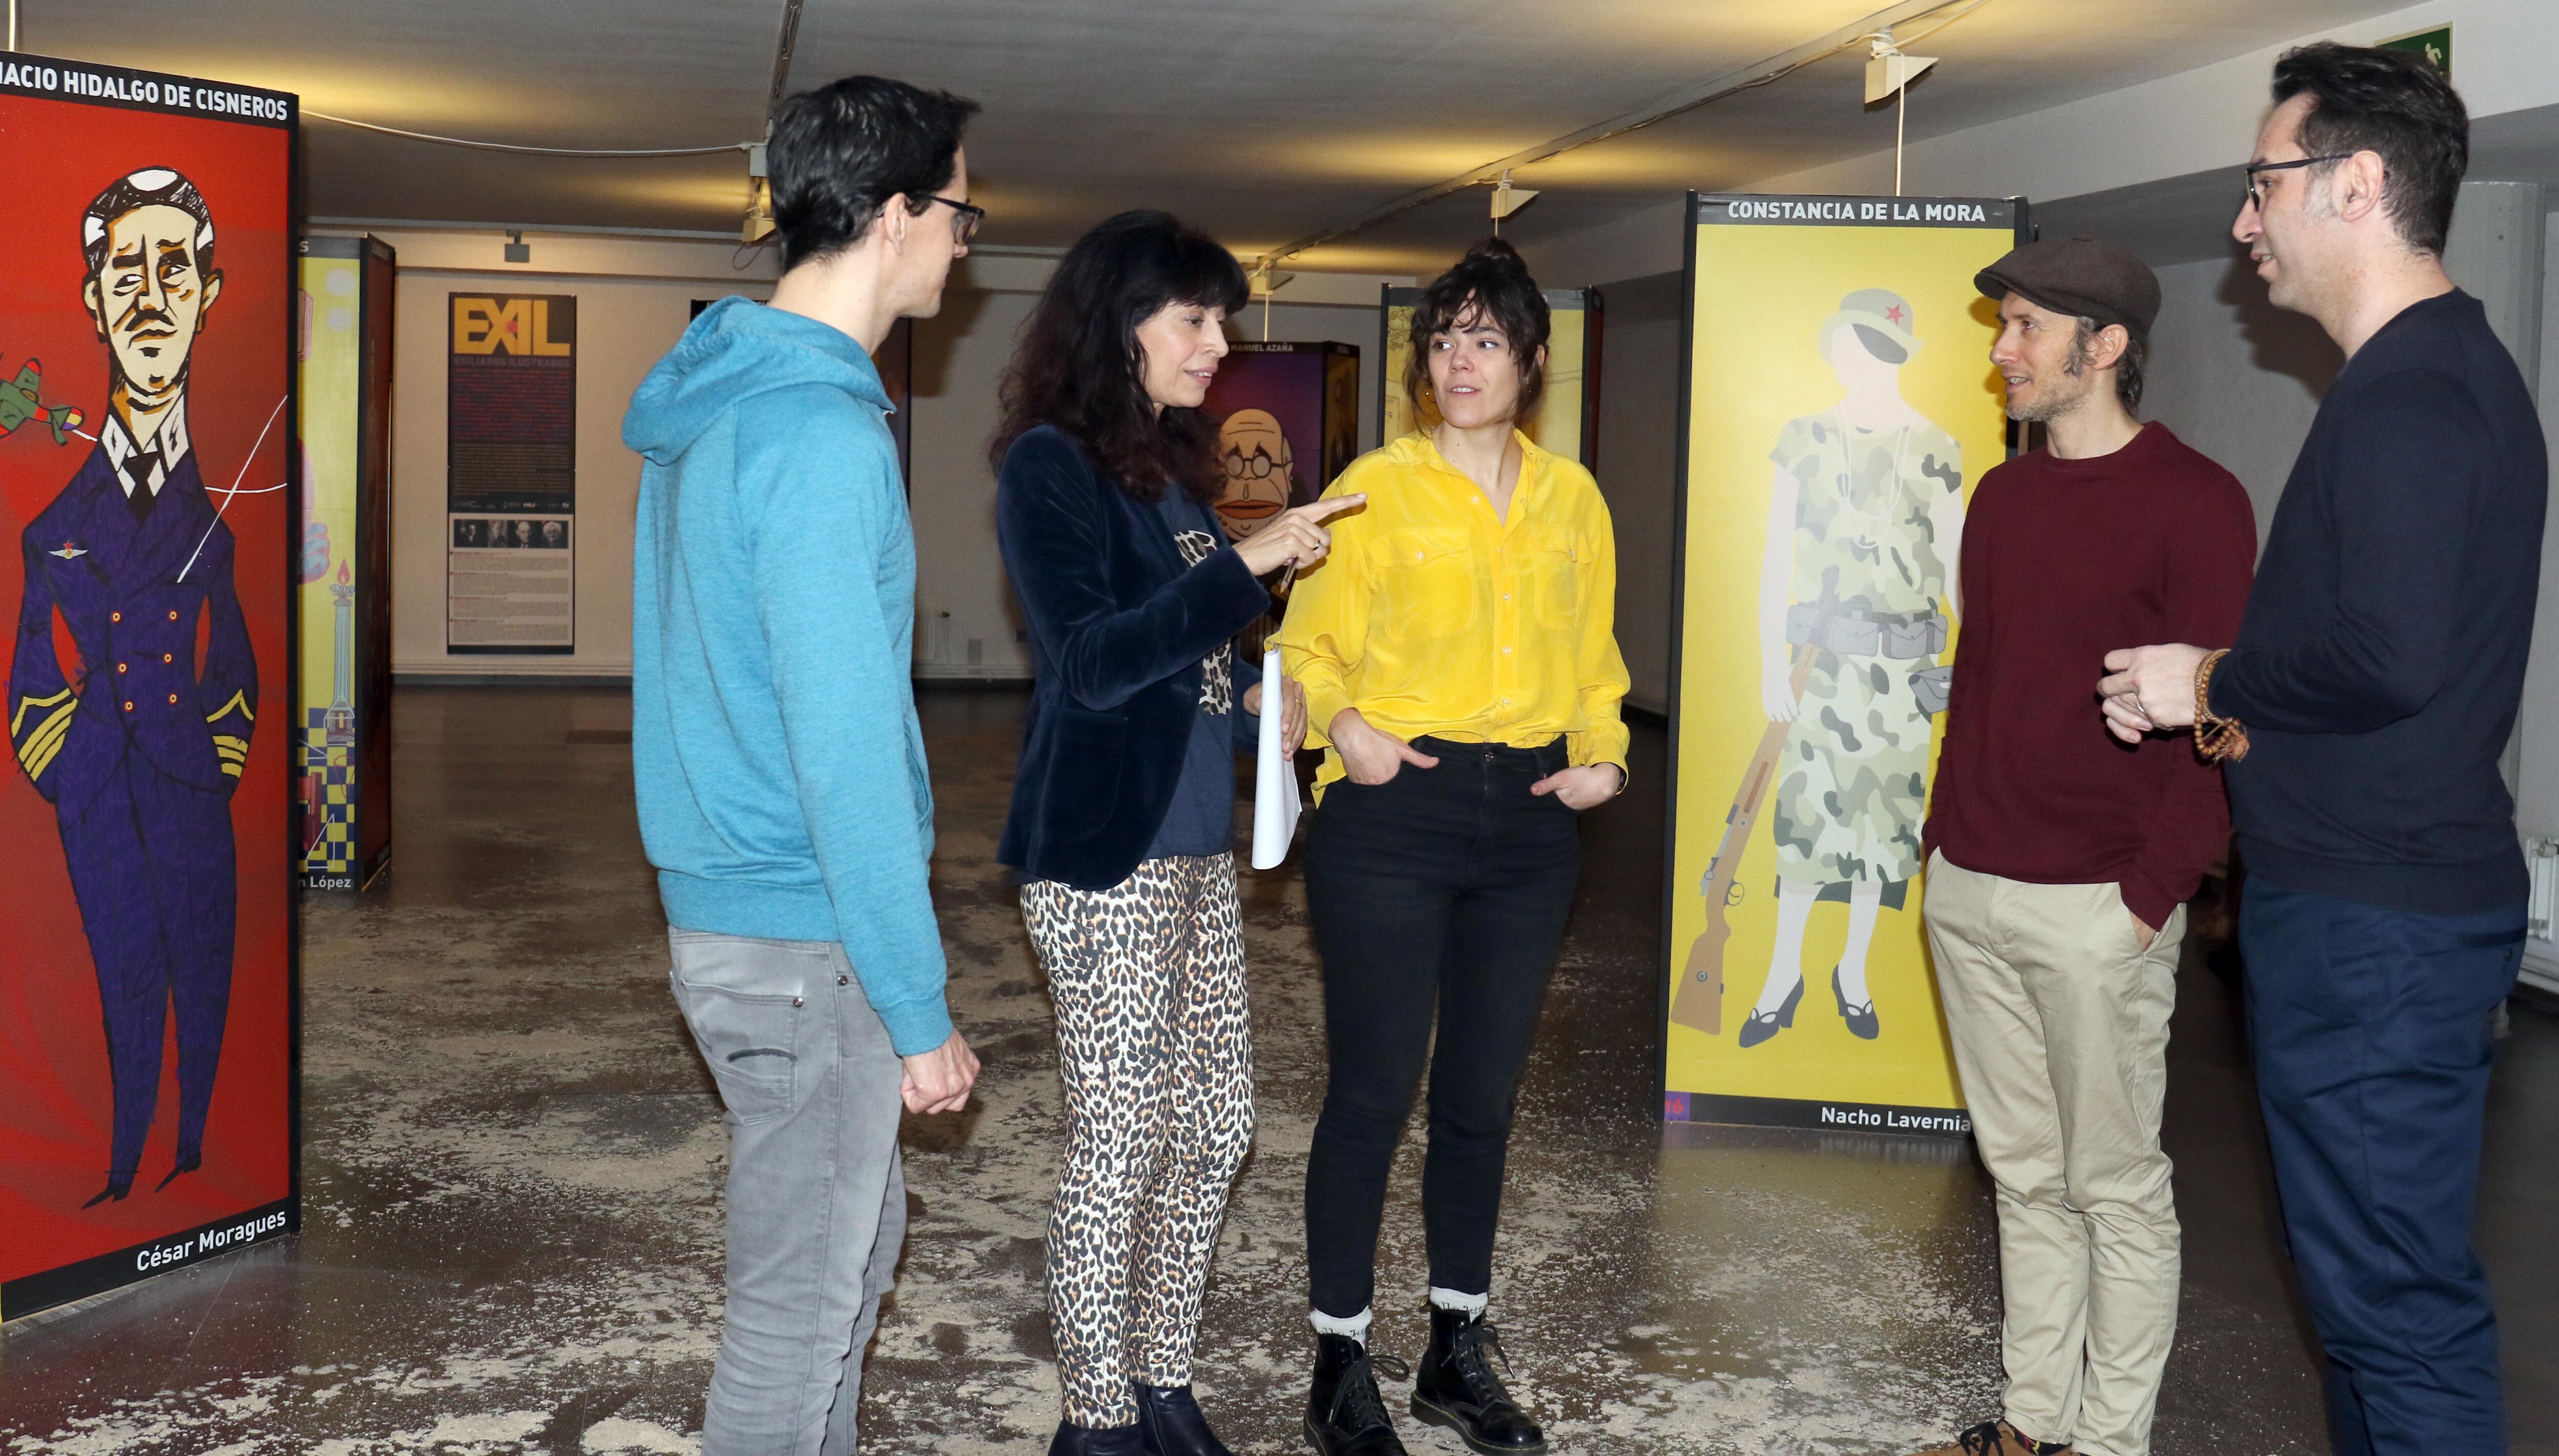 La concejala de Cultura y Turismo, Ana Redondo, ha presentado este jueves la exposición 'Exiliados ilustrados'.